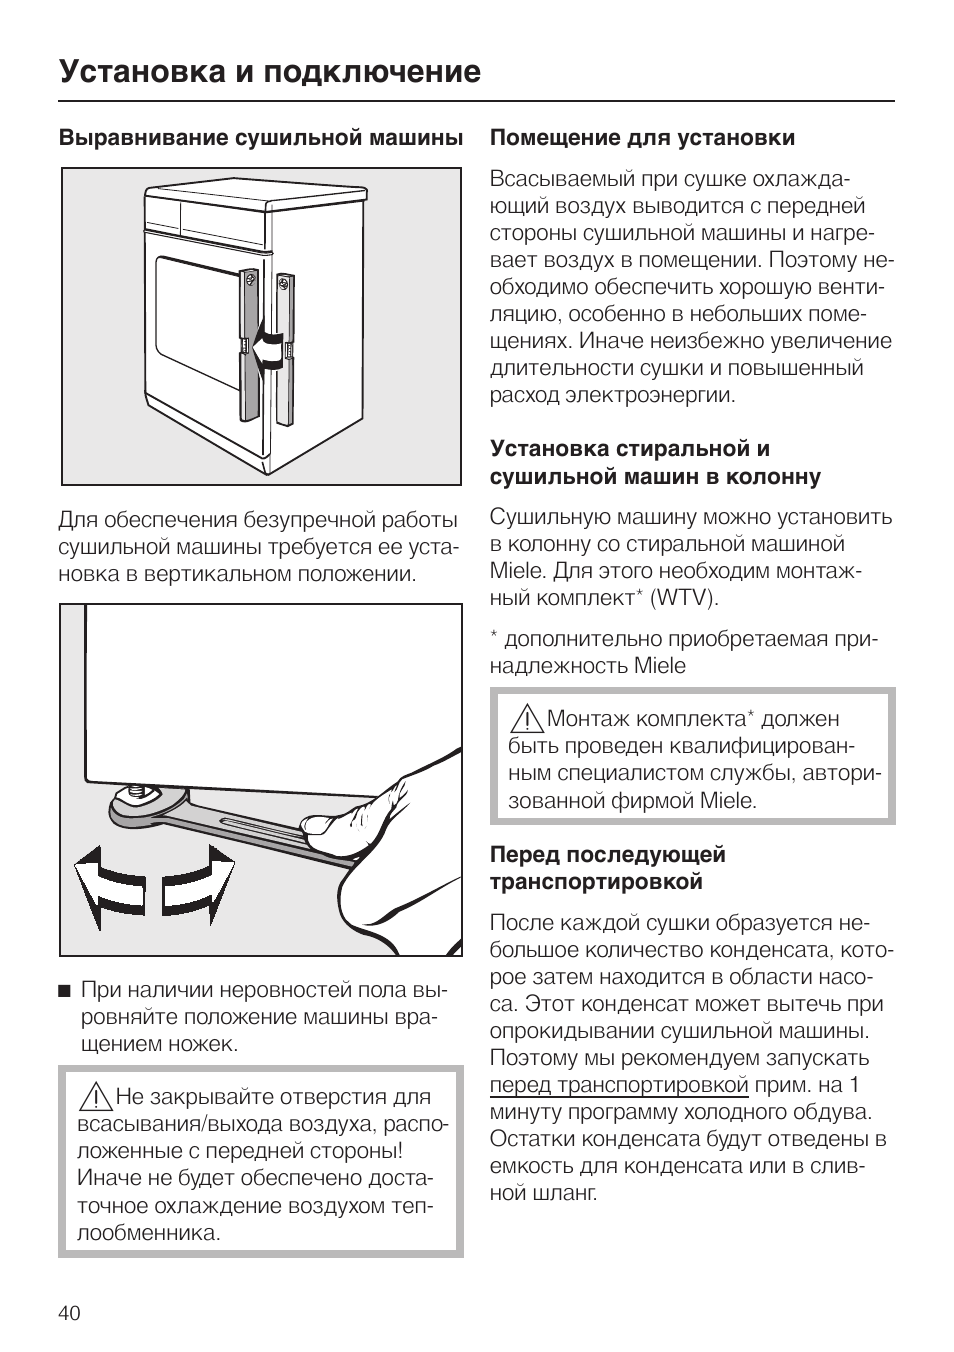 Установка сушильной машины на стиральную машину: пошаговая инструкция